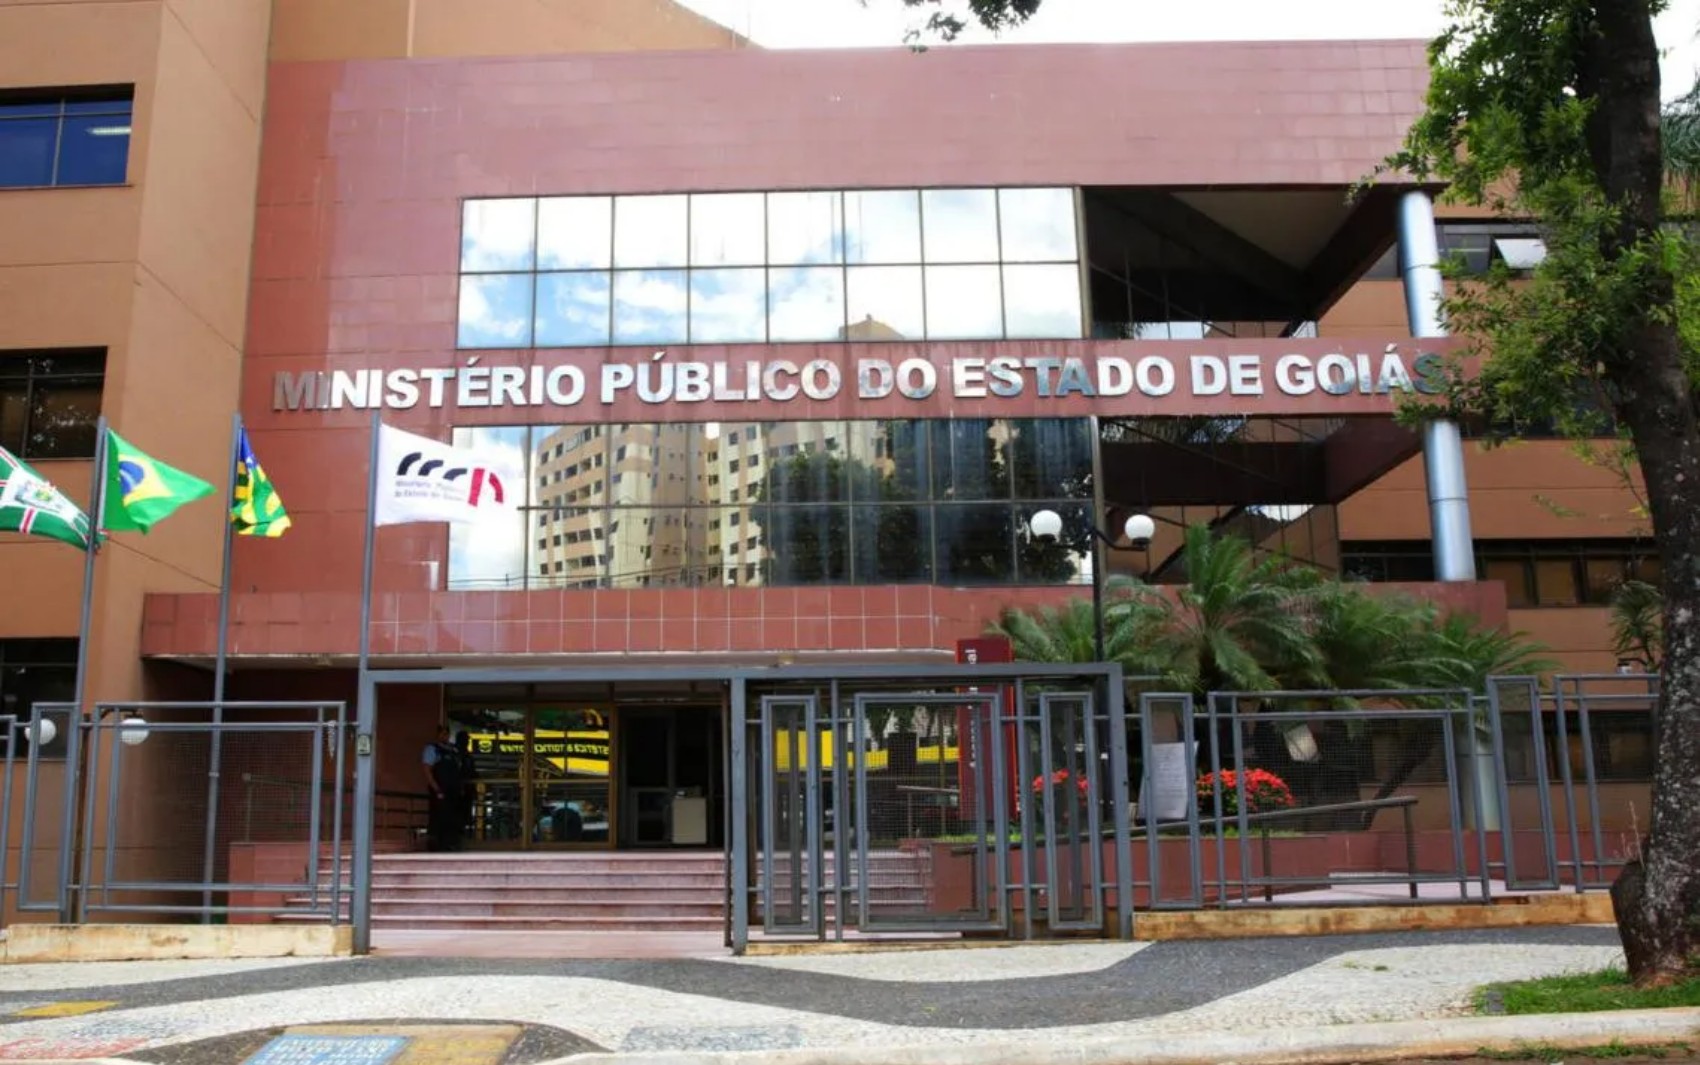 Ministério Público de Goiás divulga concurso para nível fundamental com salário inicial de quase R$ 4 mil